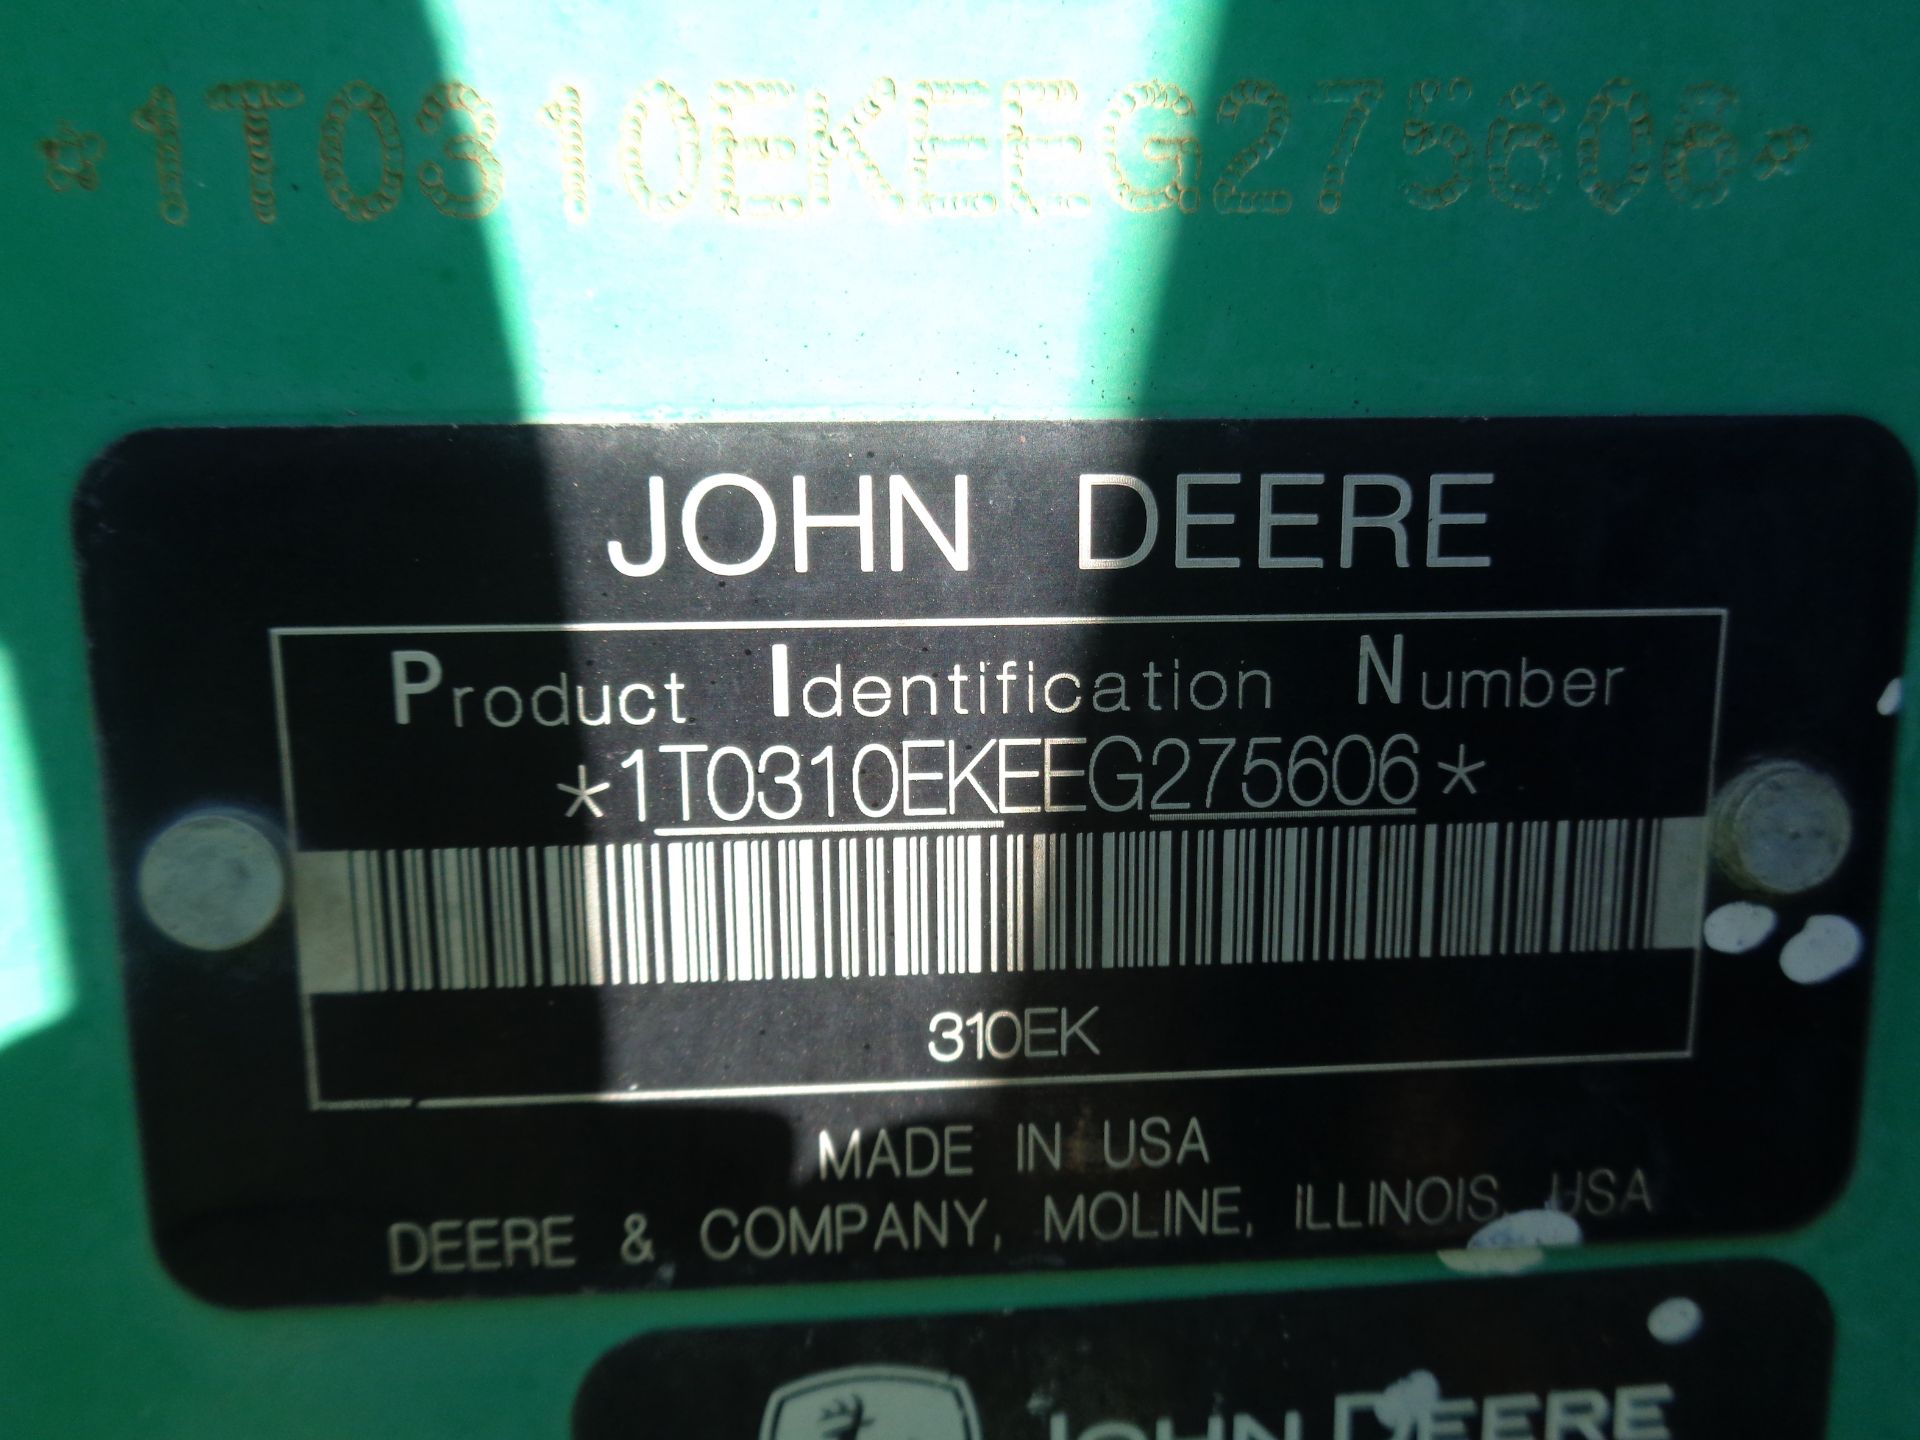 2015 John Deere 310EK Backhoe Loader - Lester, PA - Image 11 of 11